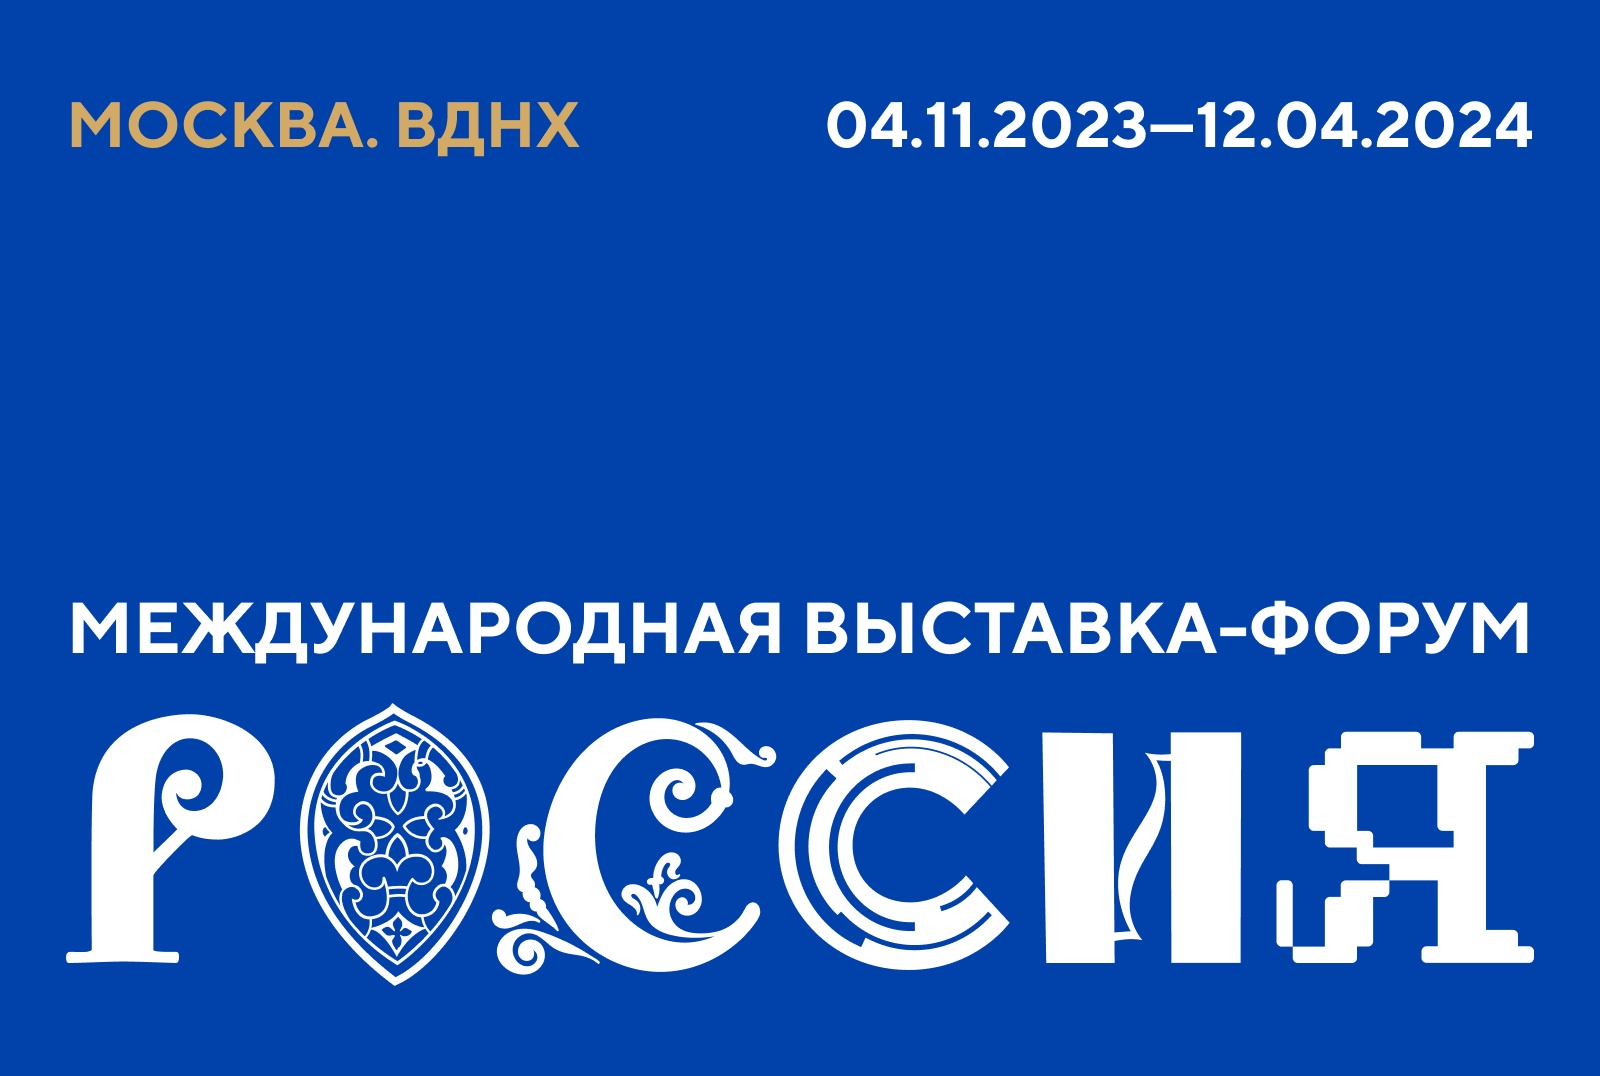 Закрытие Года педагога и наставника пройдет на Международной выставке-форуме «Россия».